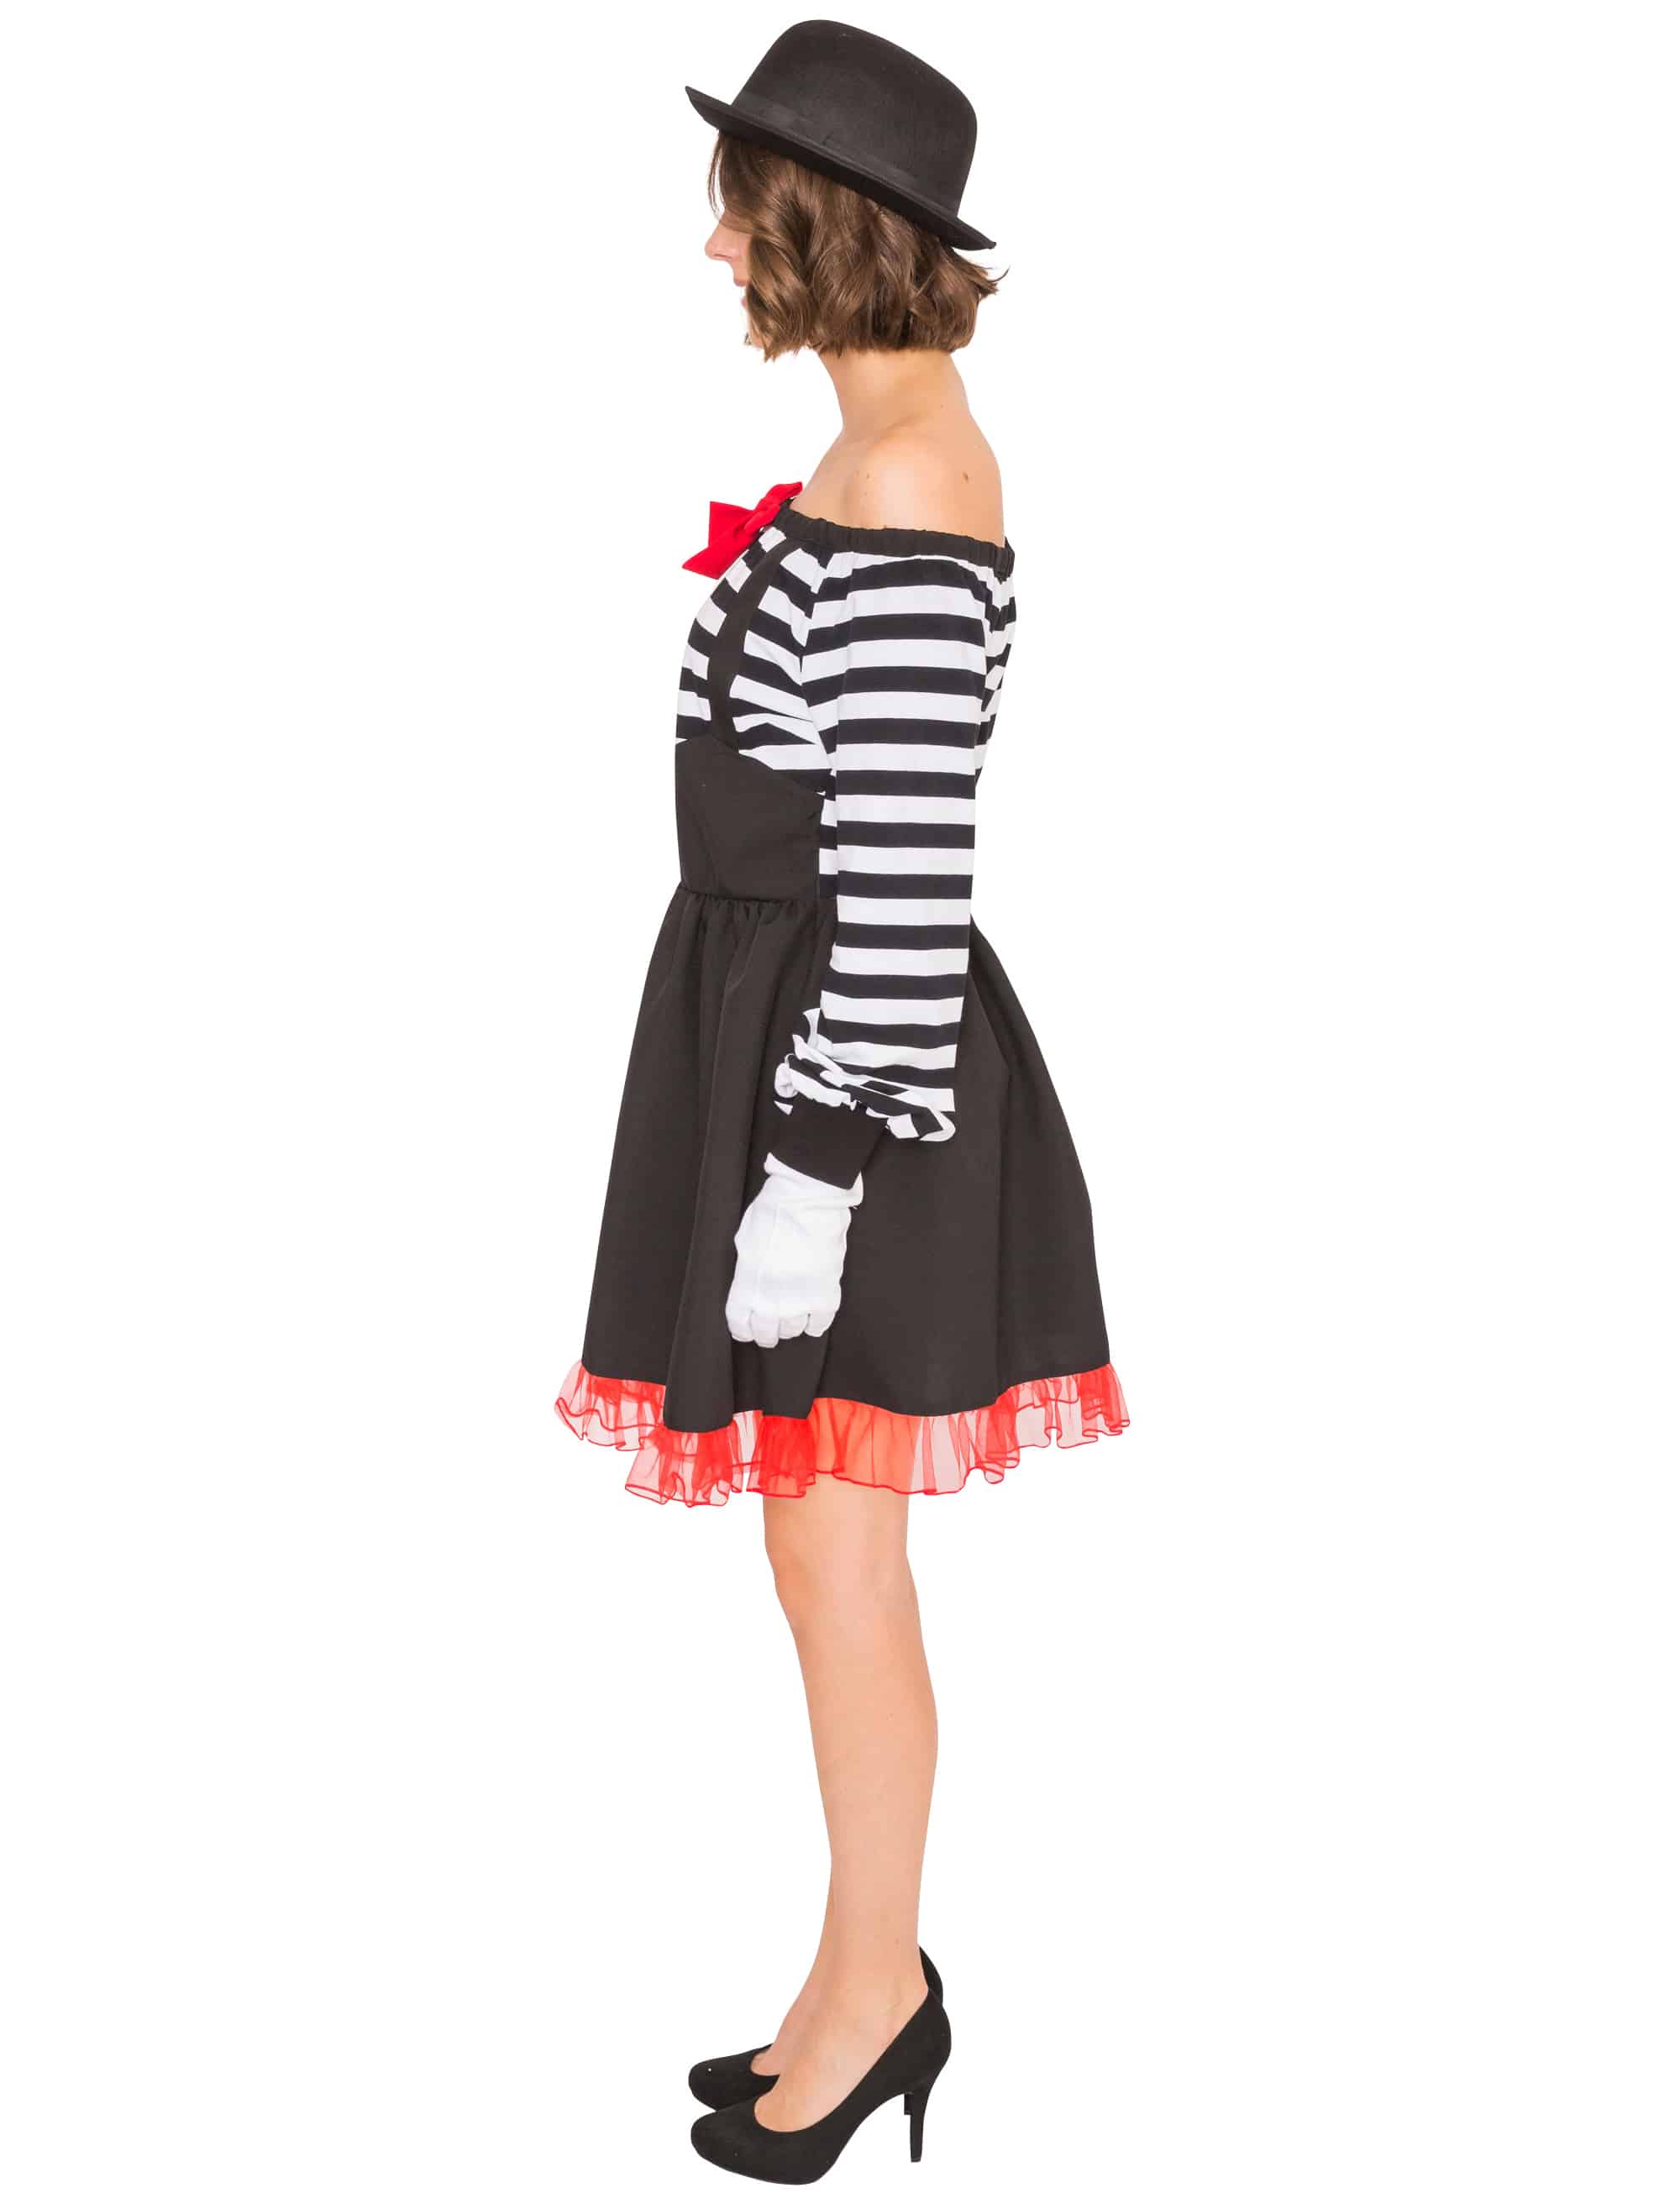 Kleid Pantomime schulterfrei schwarz/weiß XL